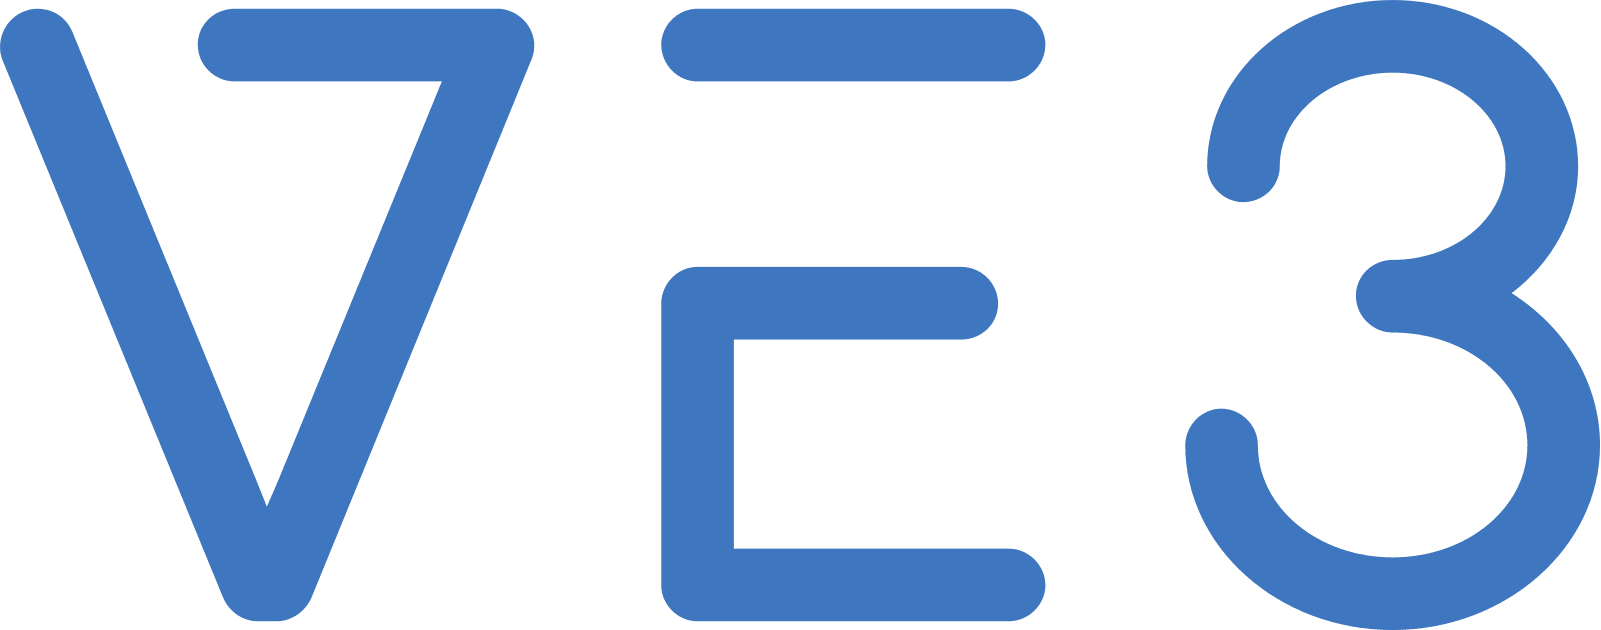 VE3 logo